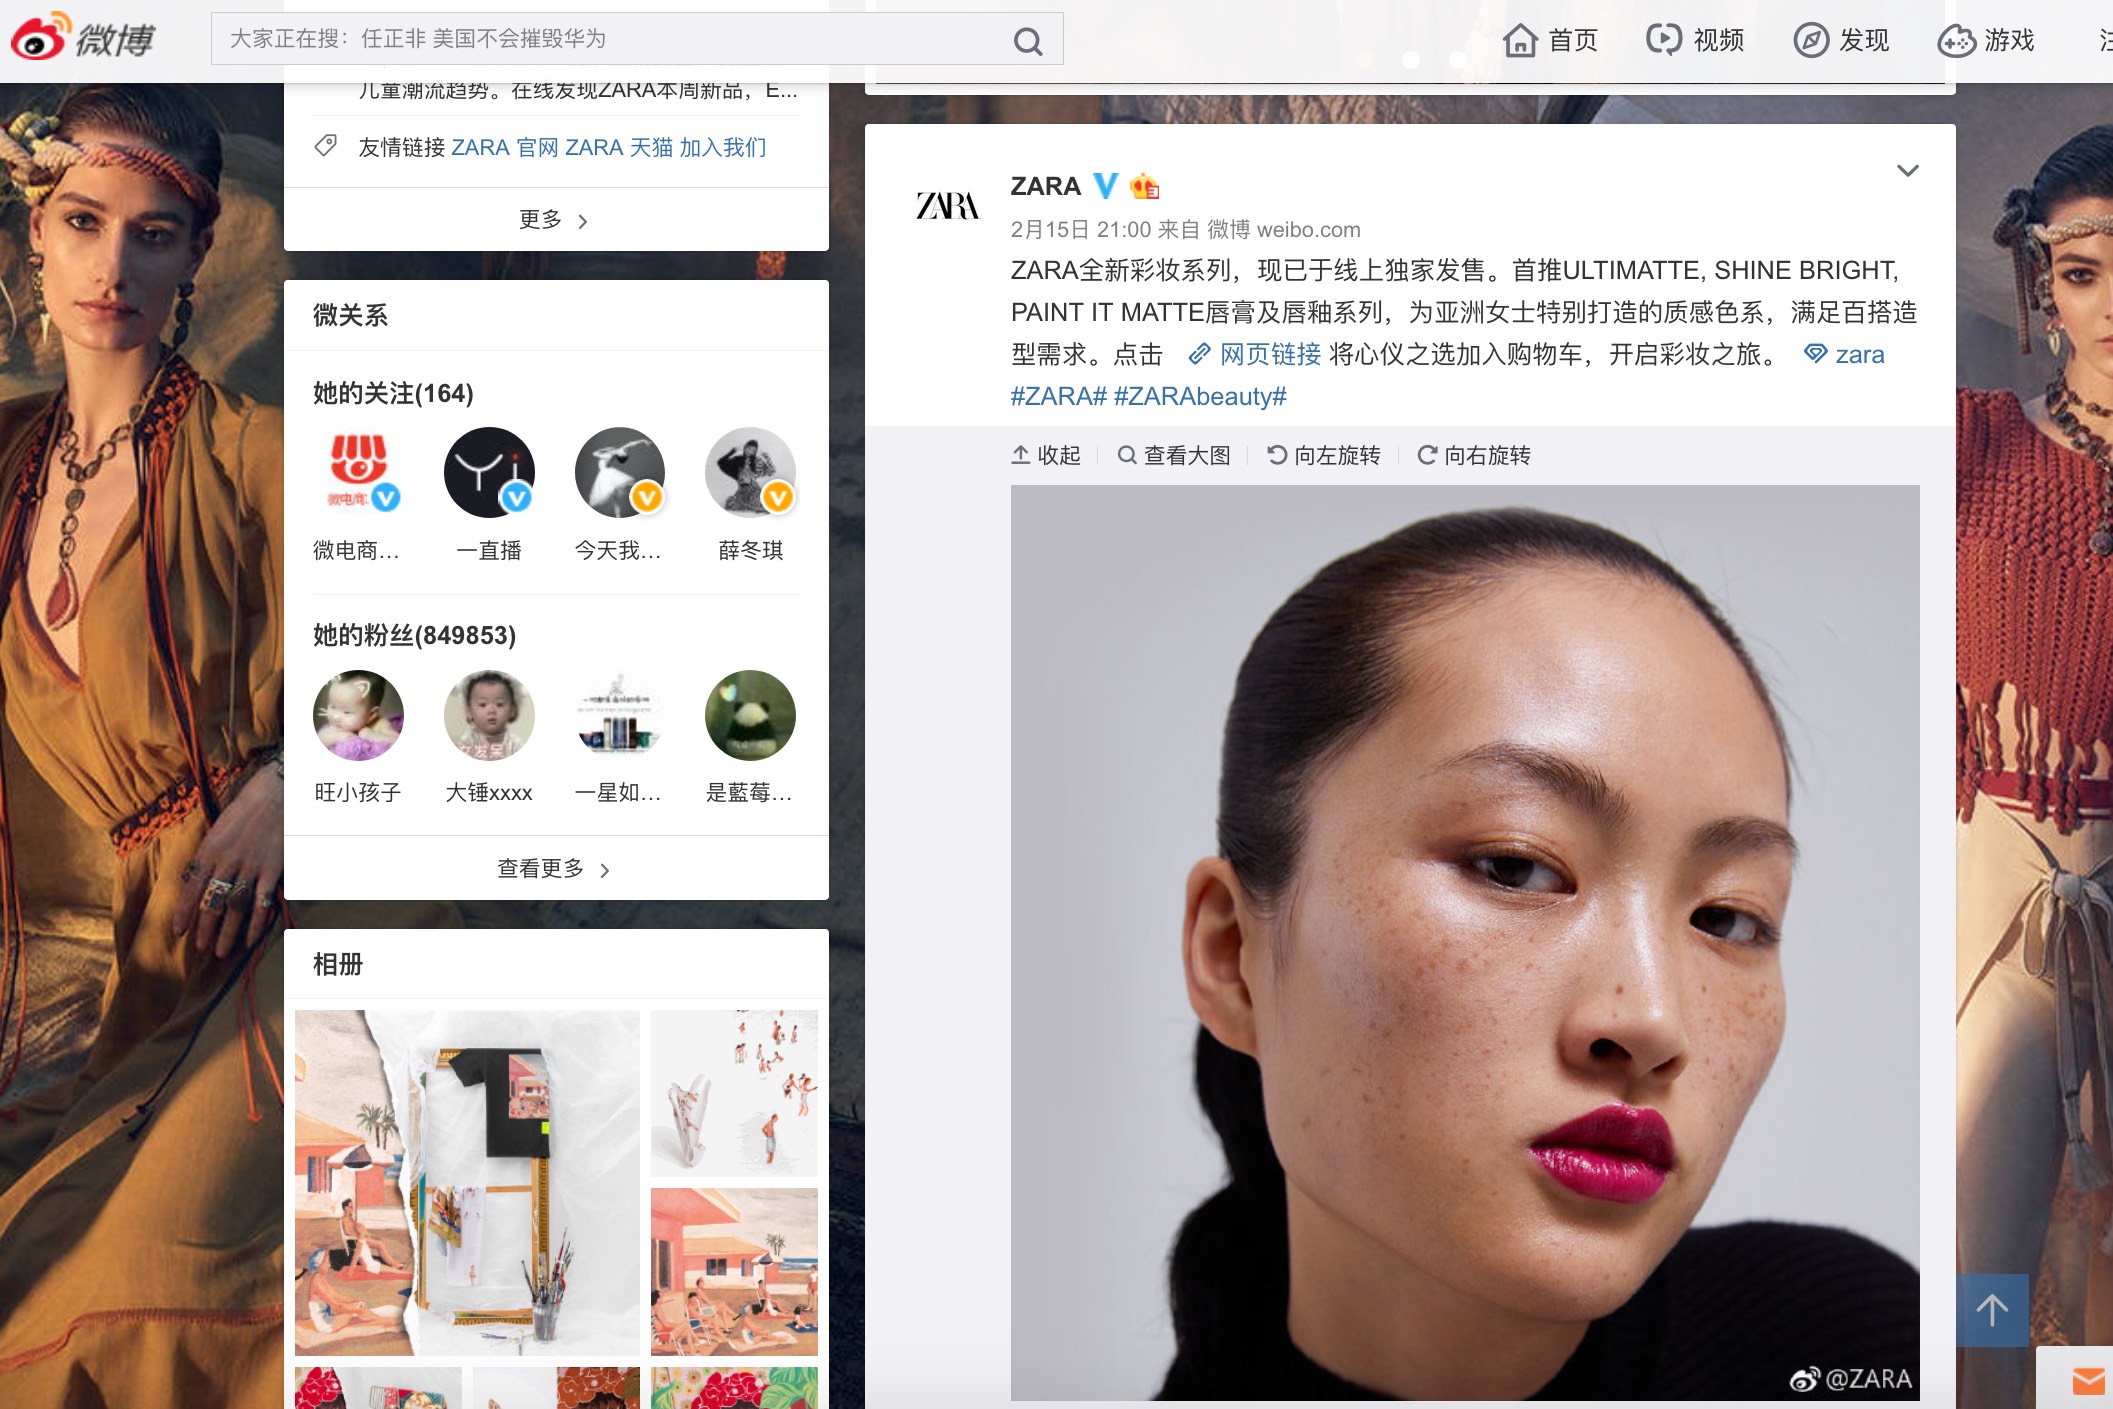 A screenshot of Zara’s Sina Weibo page featuring Chinese model Li Jingwen. Screengrab via Sina Weibo.